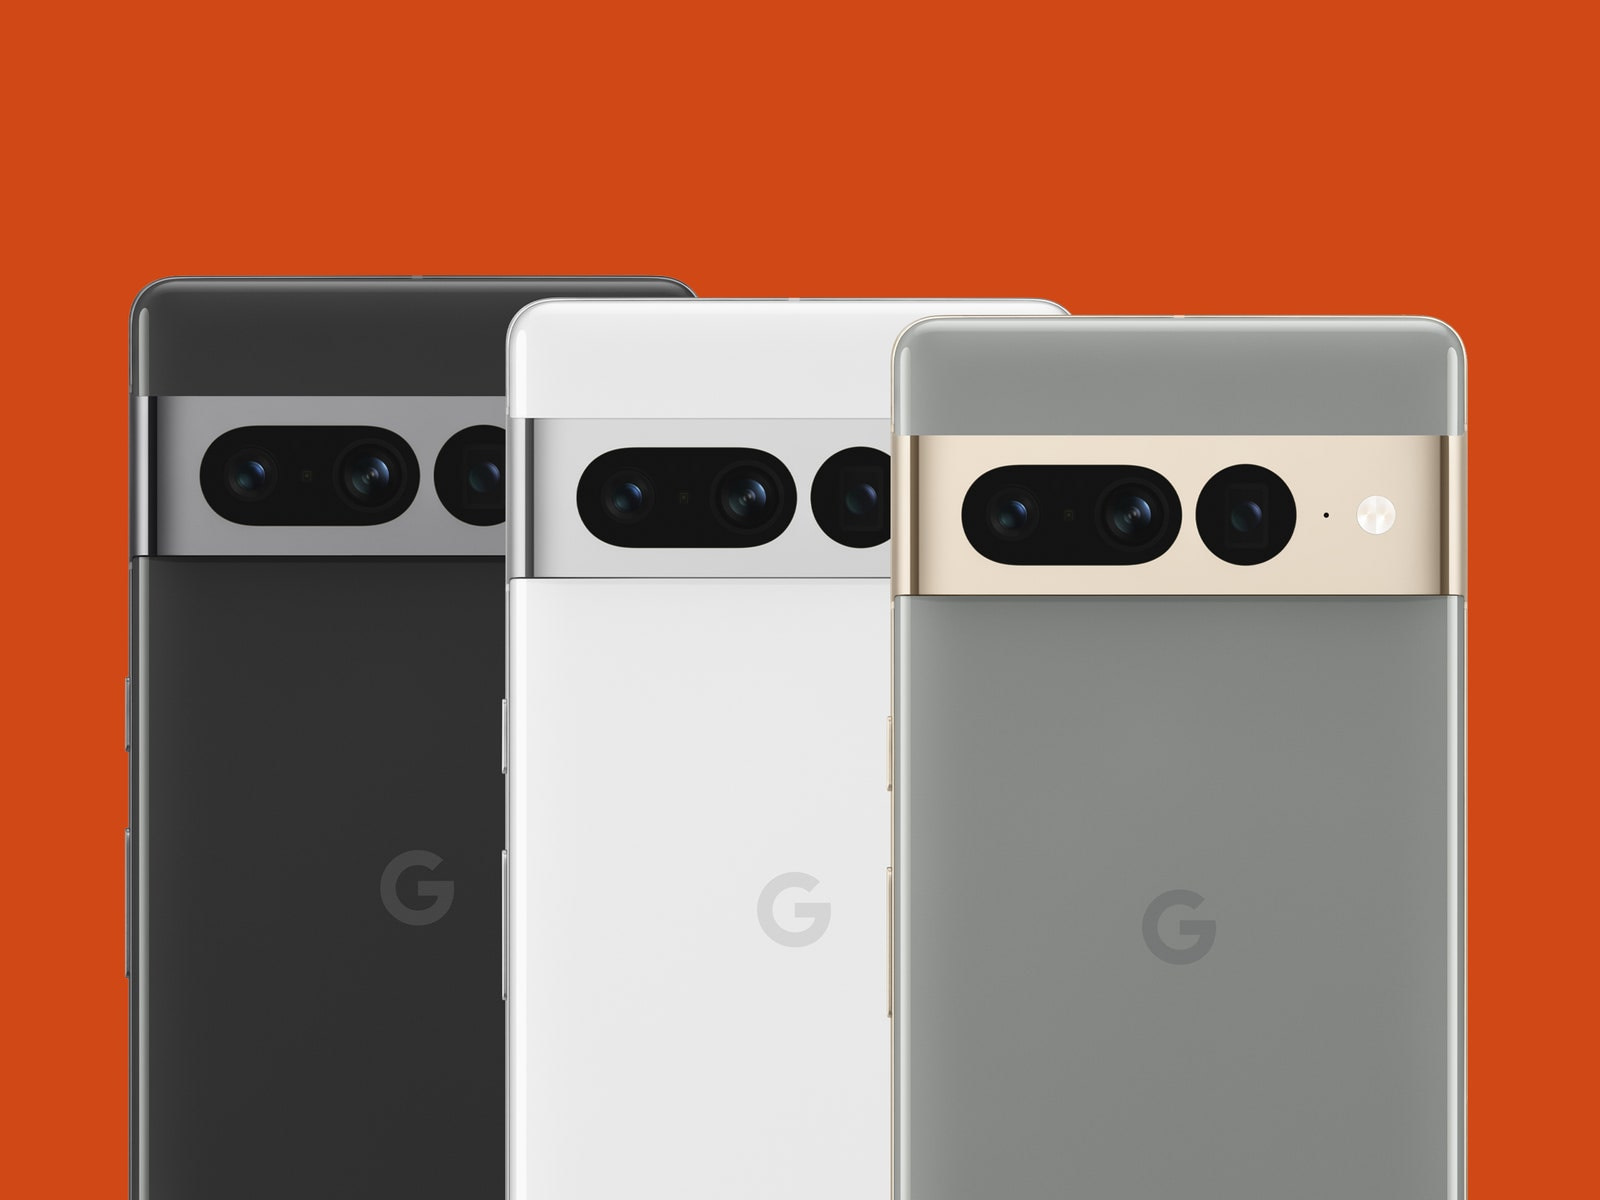 Three Google Pixel 7 Pro smartphones